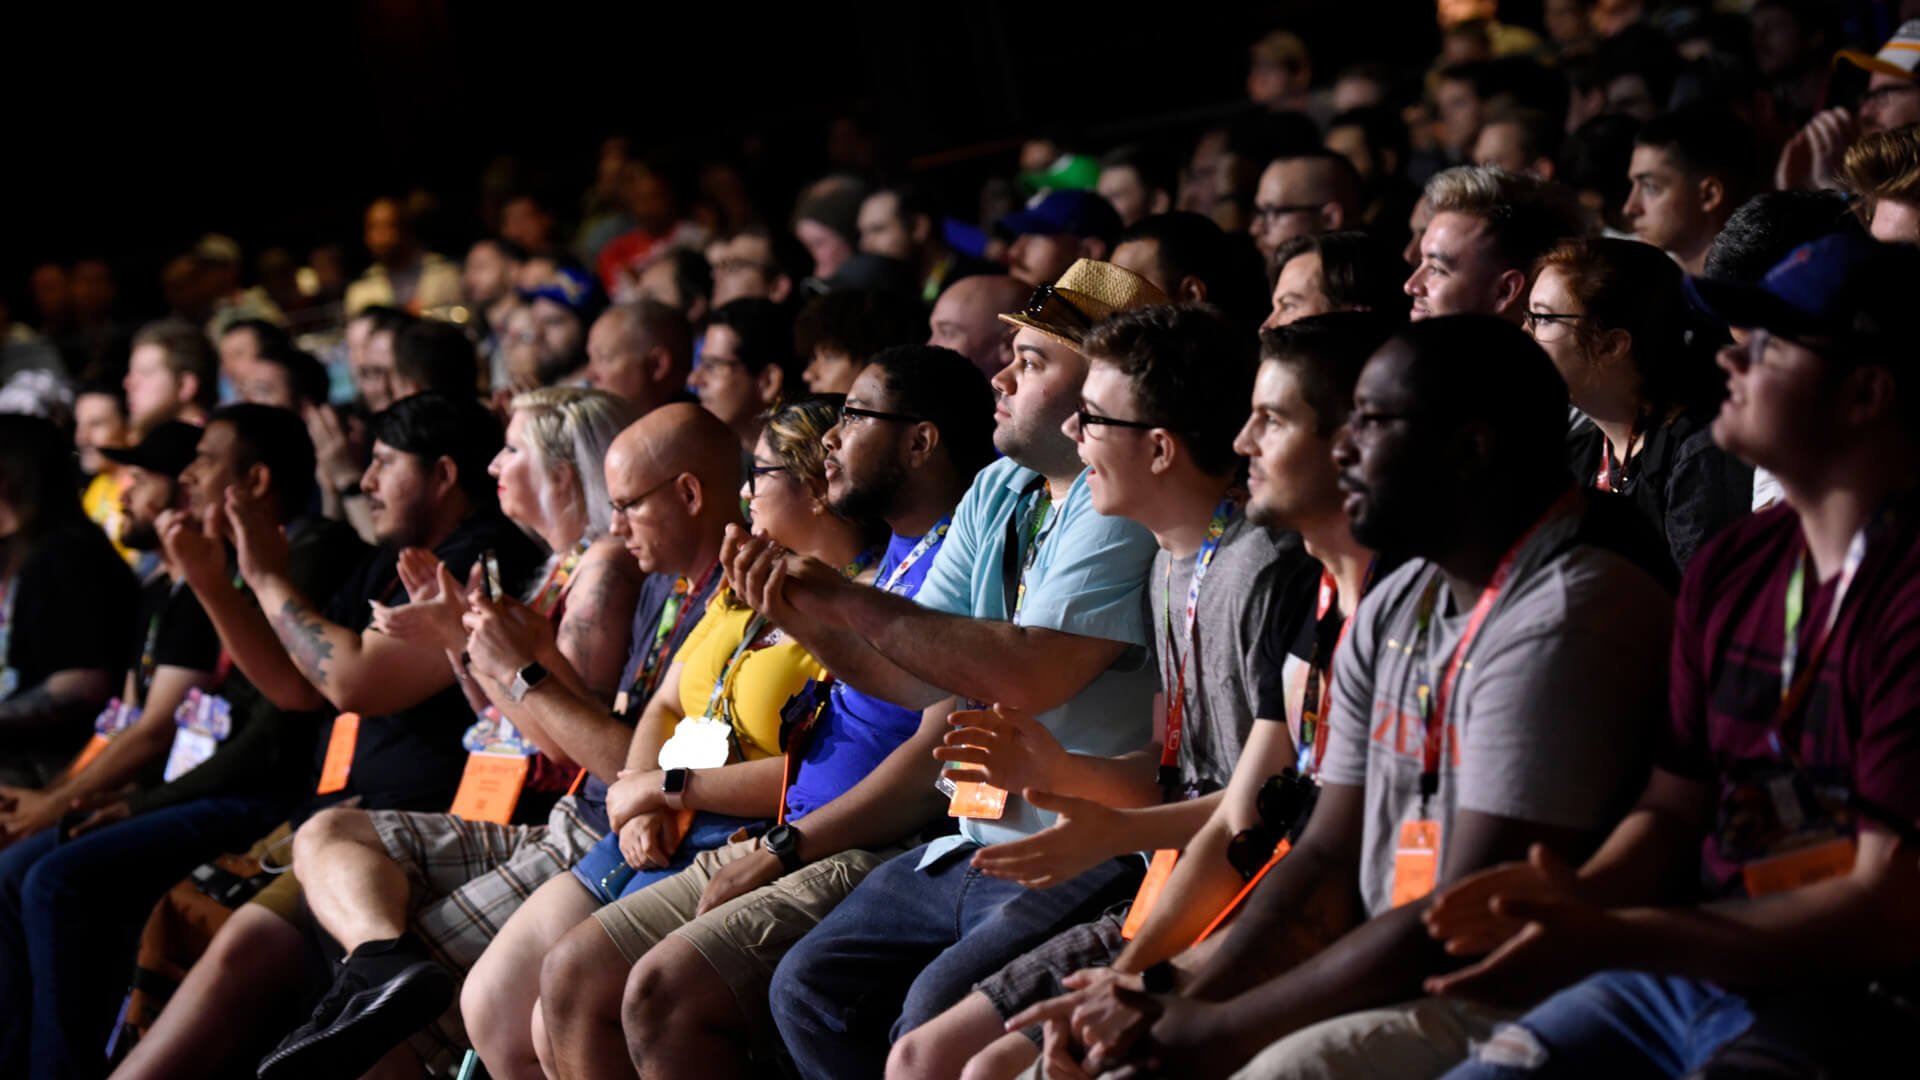 A crowd reacting enthusiastically at E3